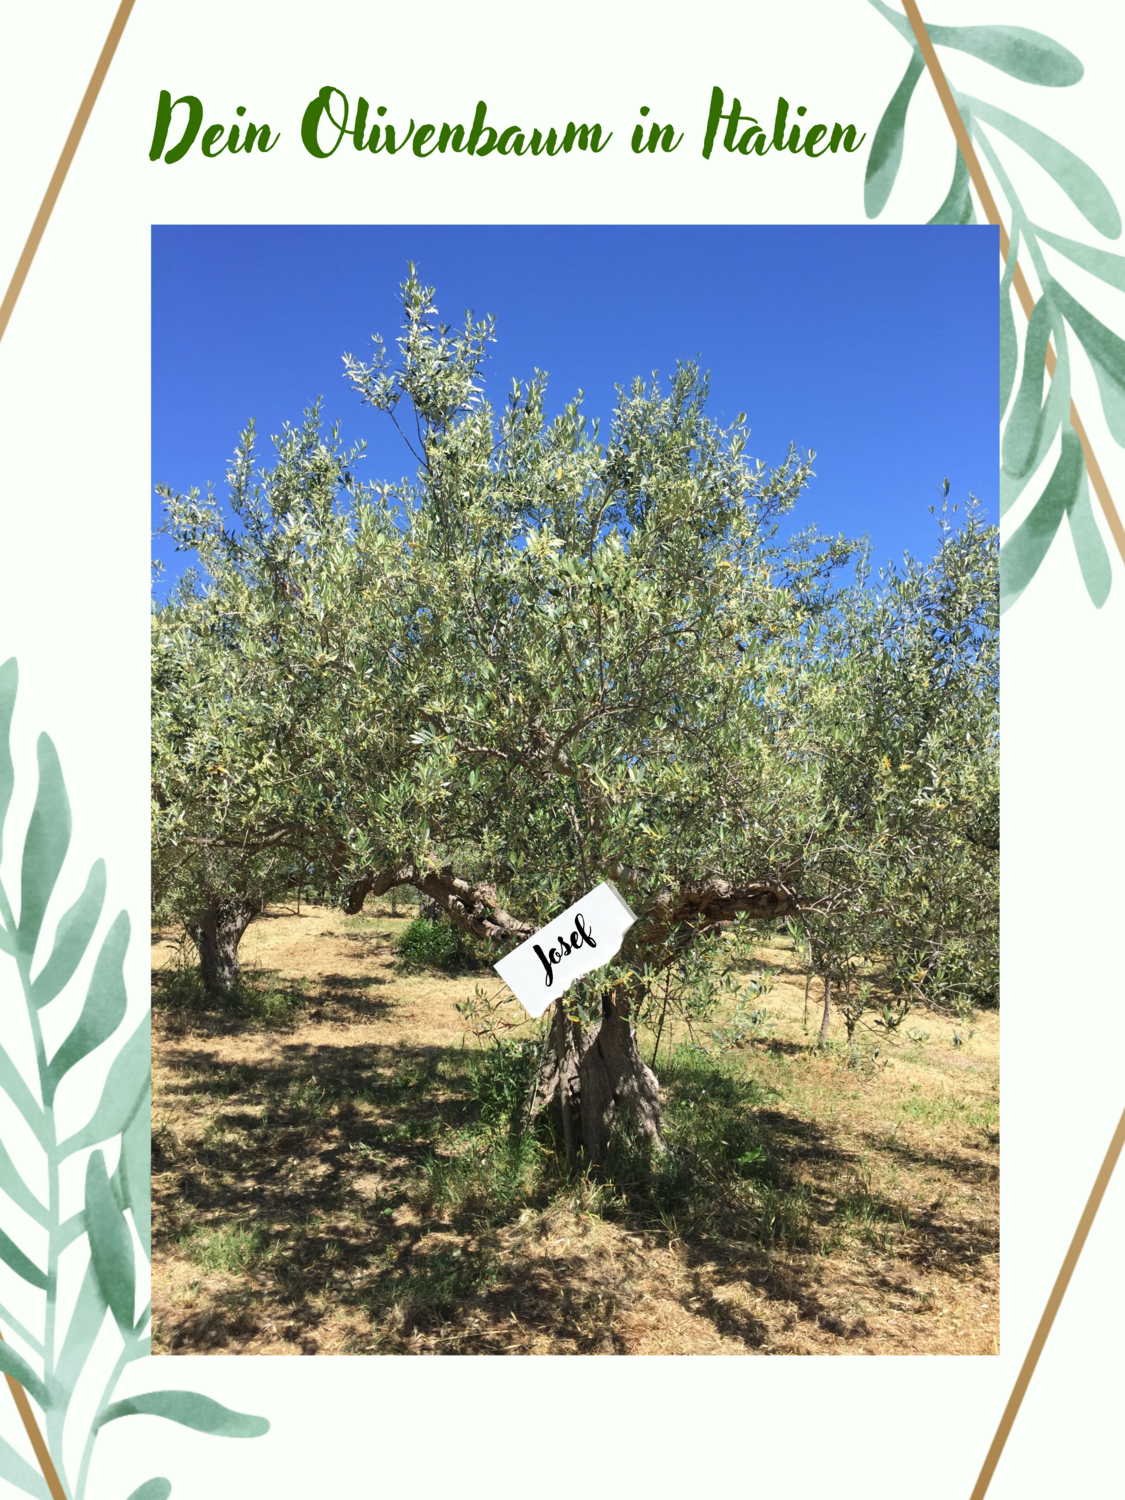 Adoptiere einen Olivenbaum!